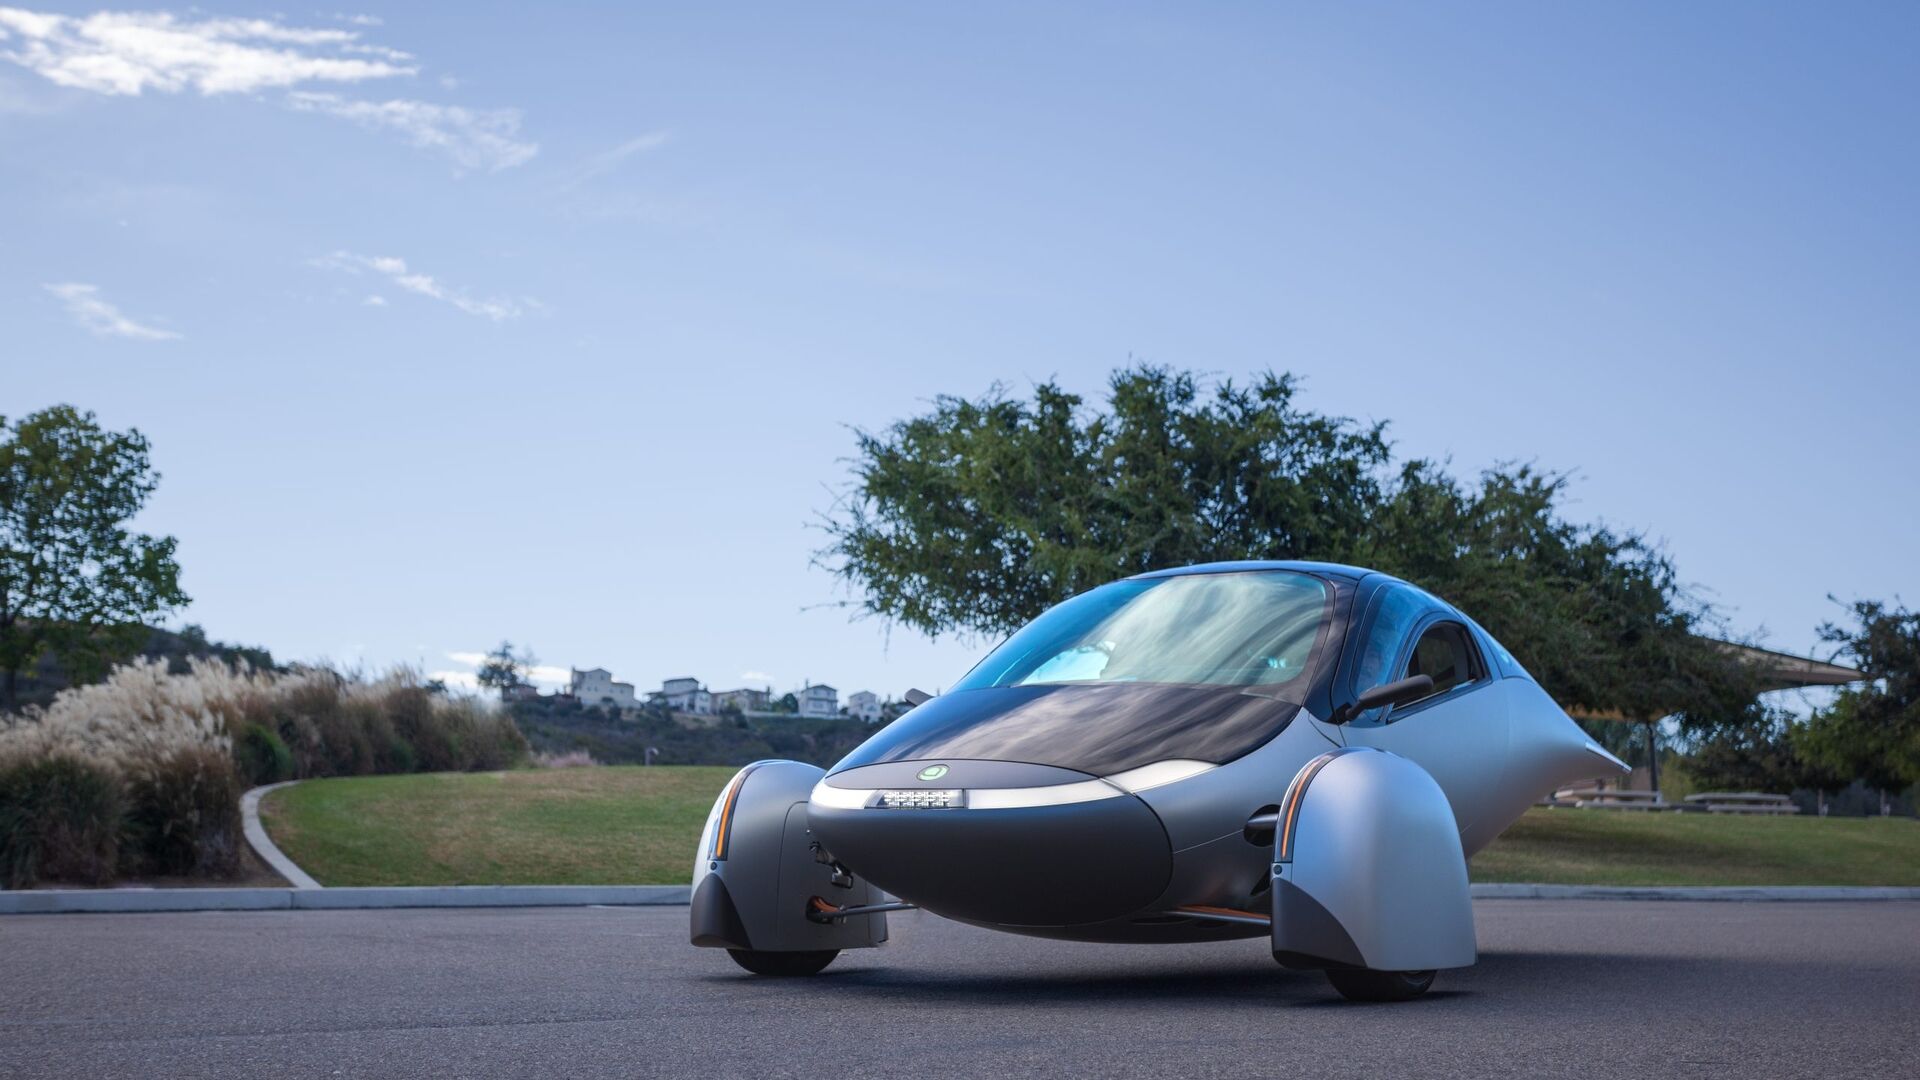 Соларен автомобил: Aptera Delta е най-устойчивият автомобил в света с пробег от 1600 км на батерия и 70 км на слънчева енергия